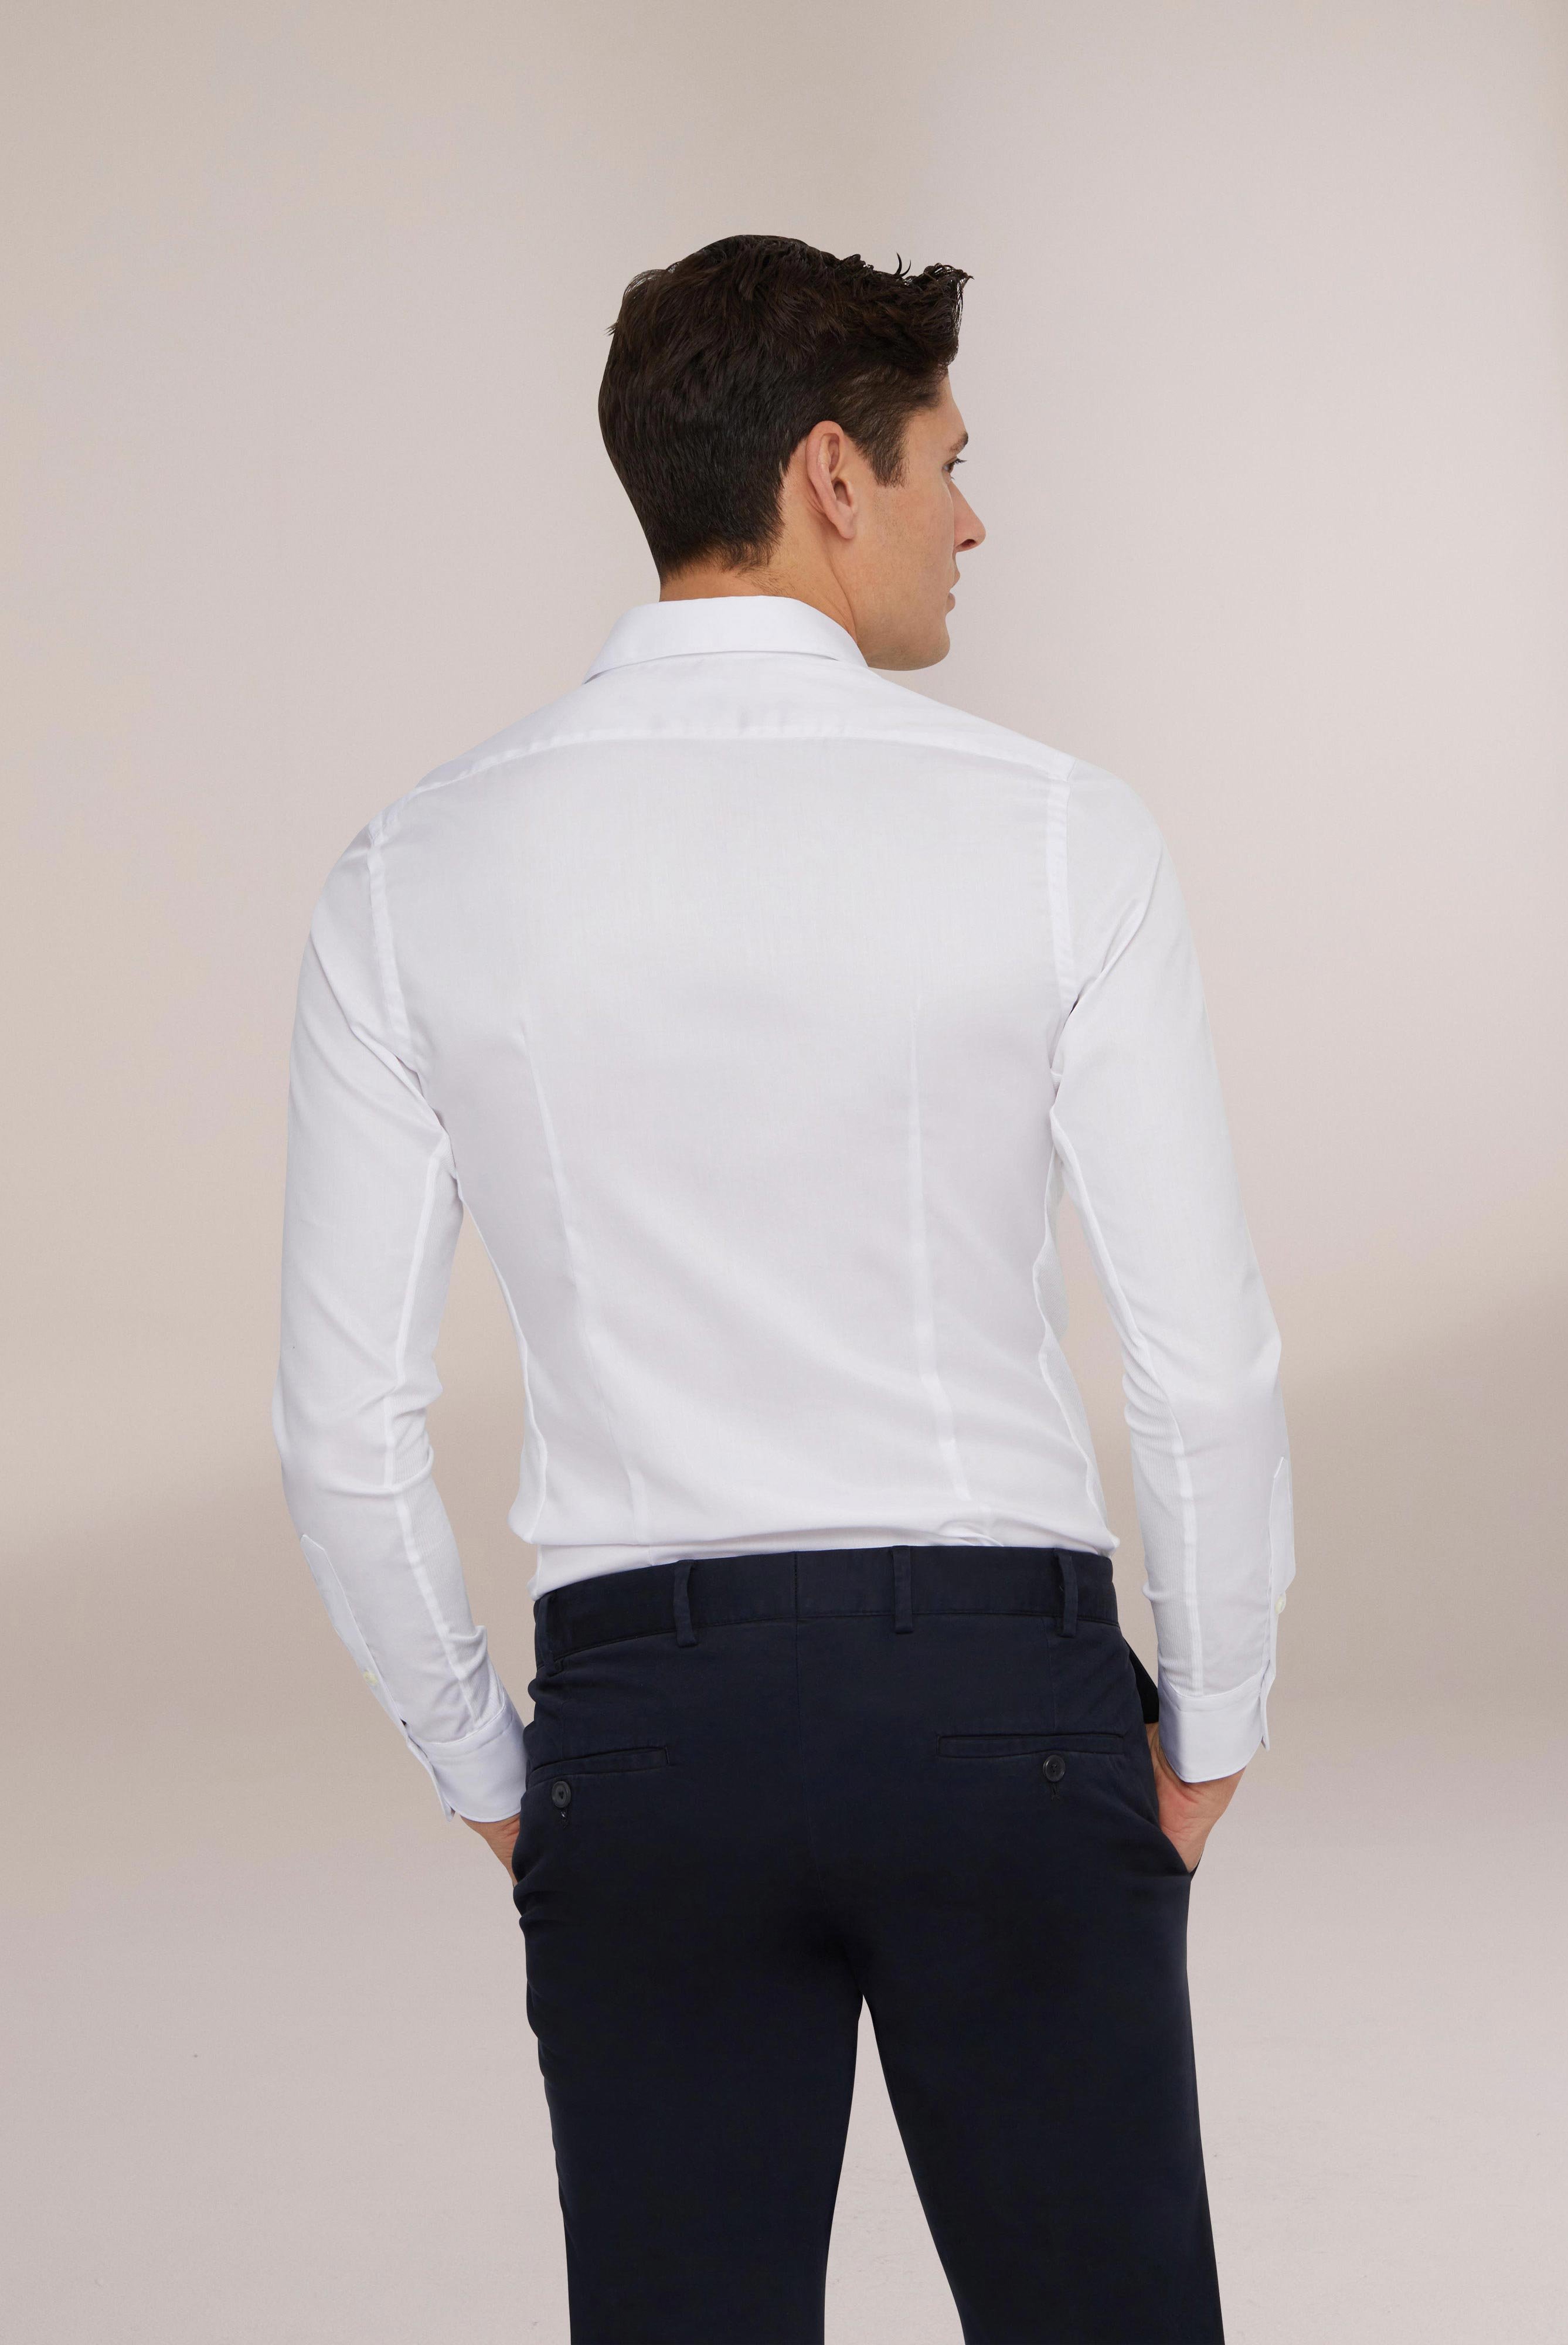 Bügelleichte Hemden+Bügelfreies Hybridshirt mit Jerseyeinsatz Slim Fit+20.2553.0F.132241.000.37